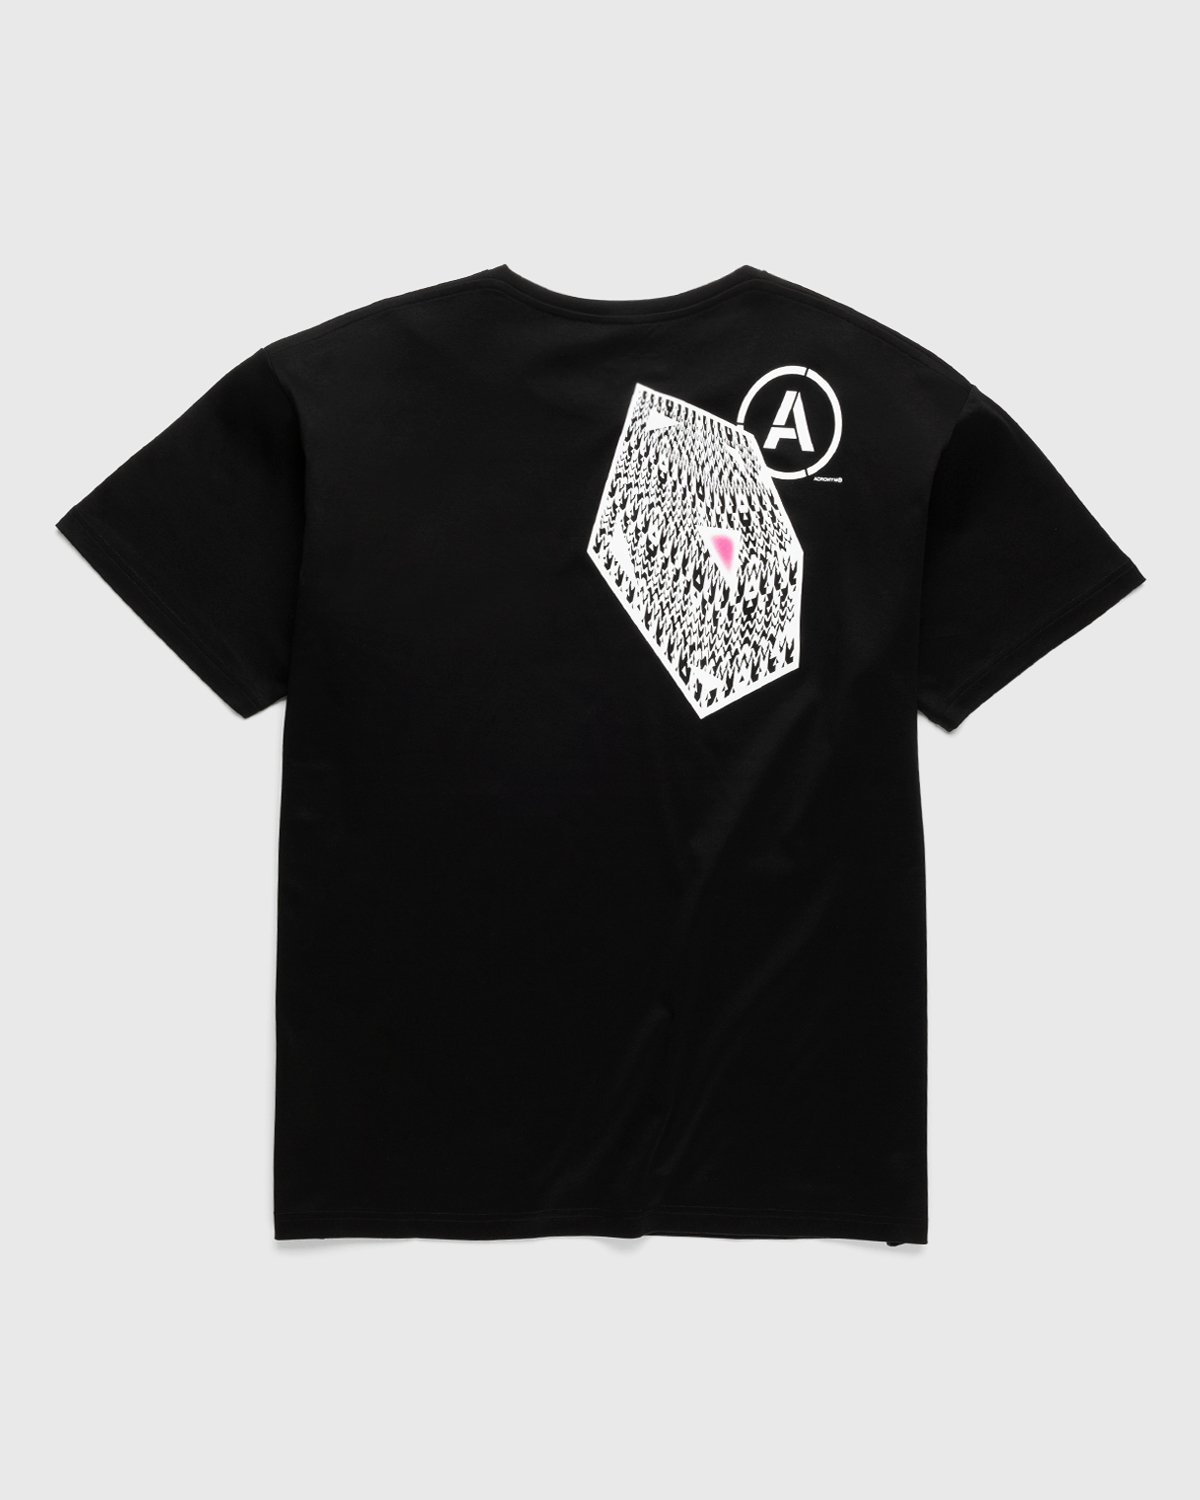 ACRONYM - S24-PR-B T-Shirt Black - Clothing - Black - Image 1